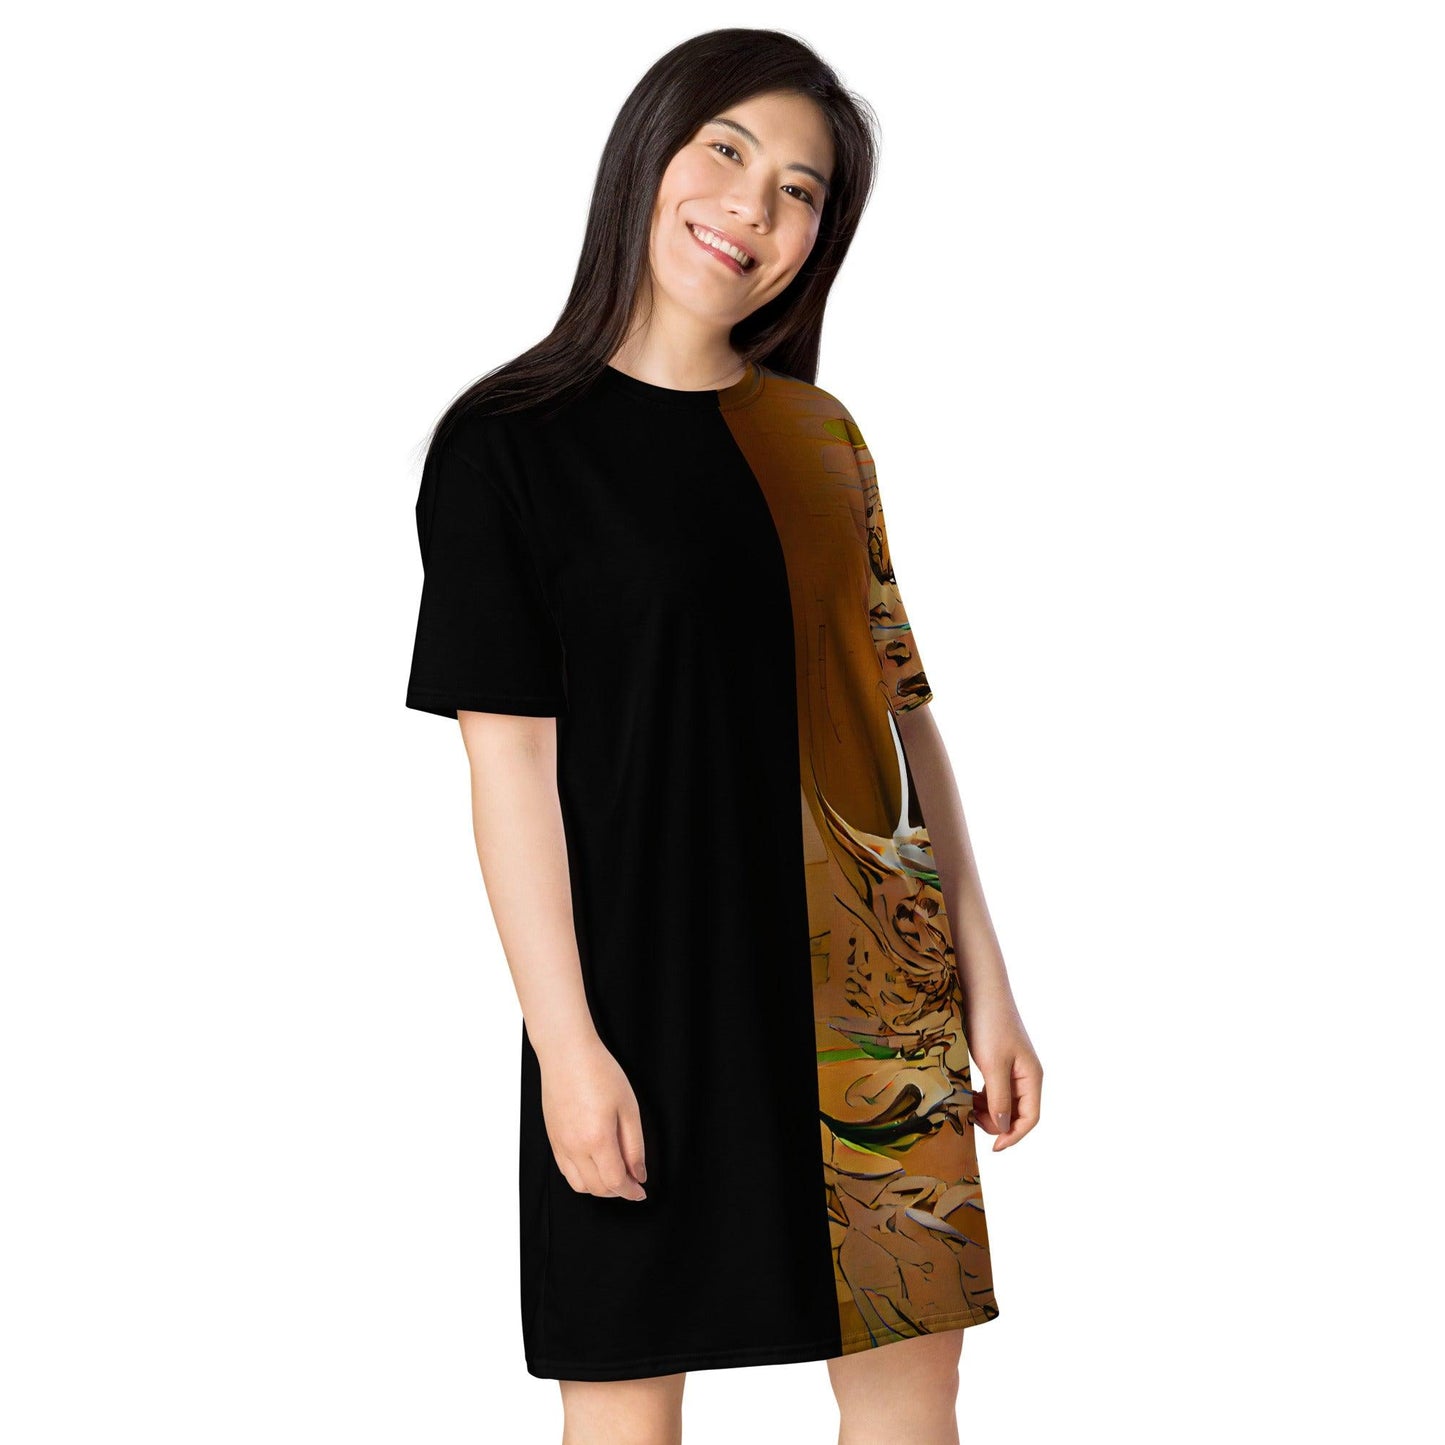 Half Black Half Gaolang - Womens T-Shirt Dress - iSAW Company